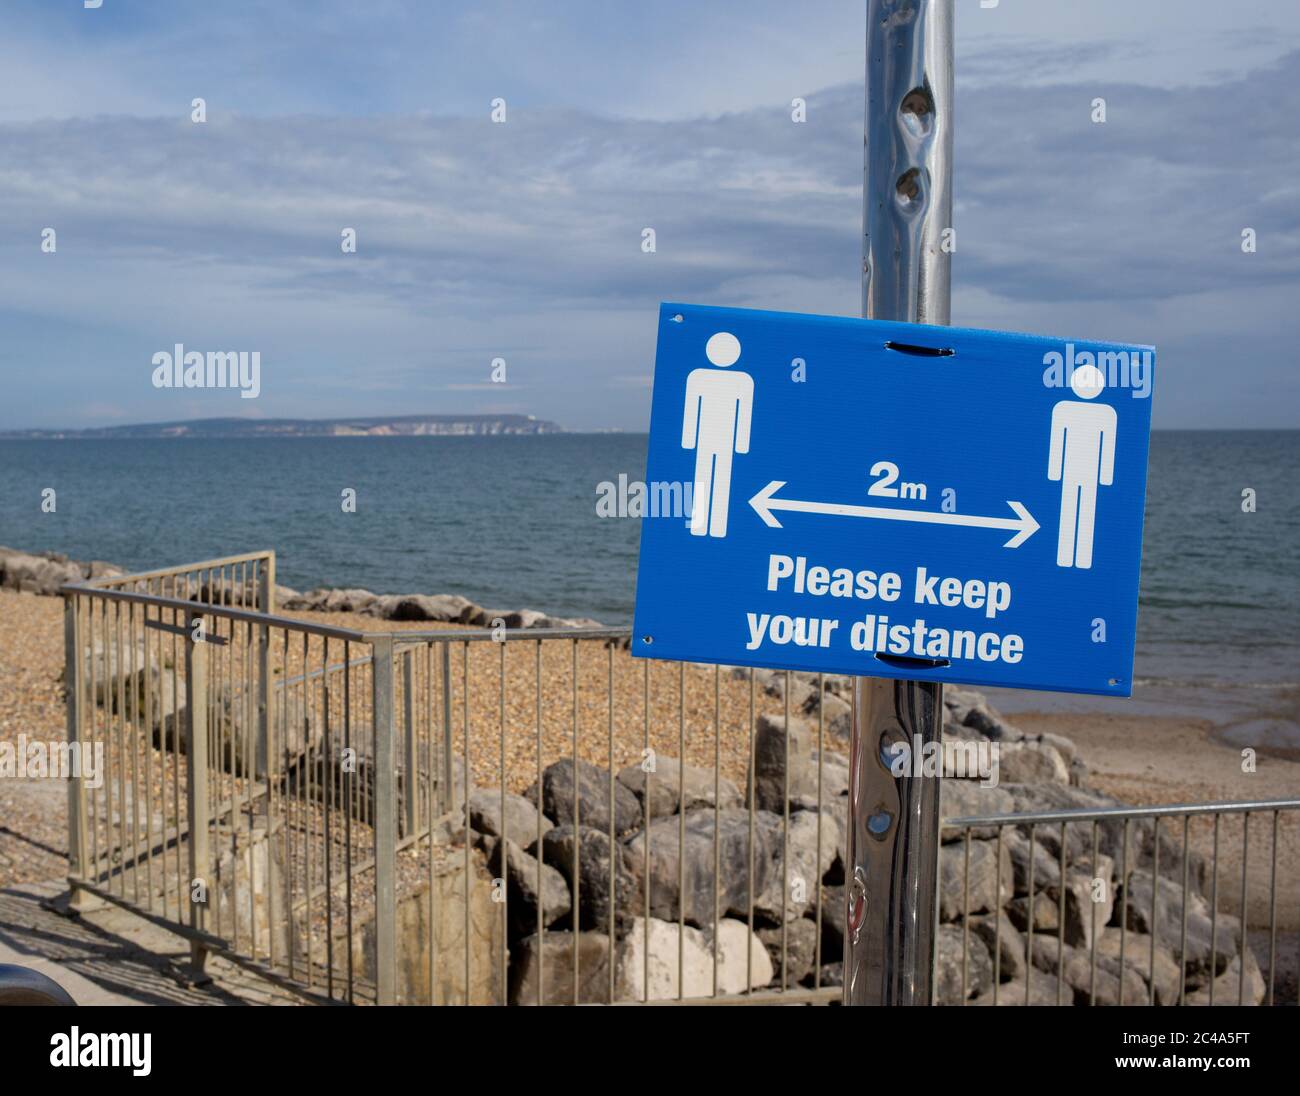 Zwei Meter halten Abstand Sozial distanzierenden Zeichen am highcliffe Strand, bournemouth. Stockfoto